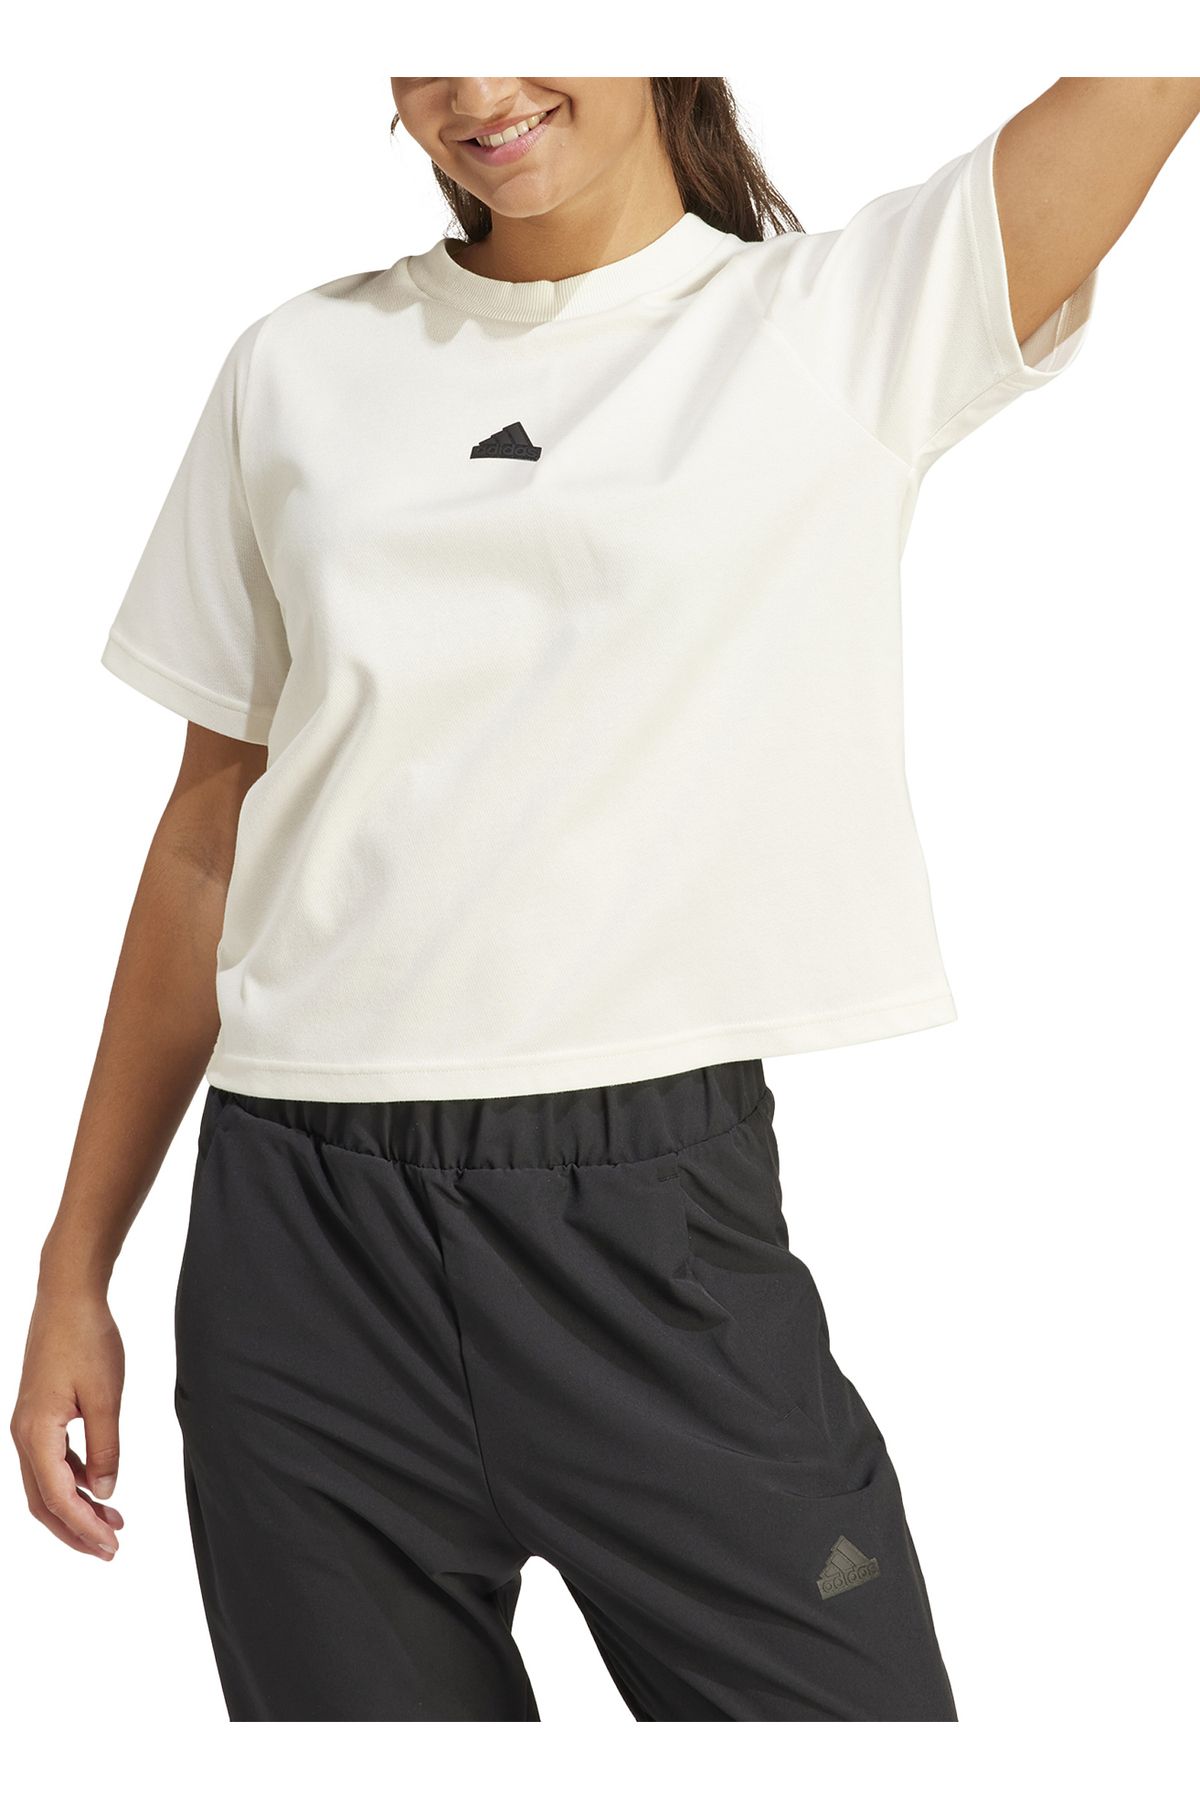 adidas Beyaz Kadın Yuvarlak Yaka Normal Kalıp T-Shirt IS3920 W